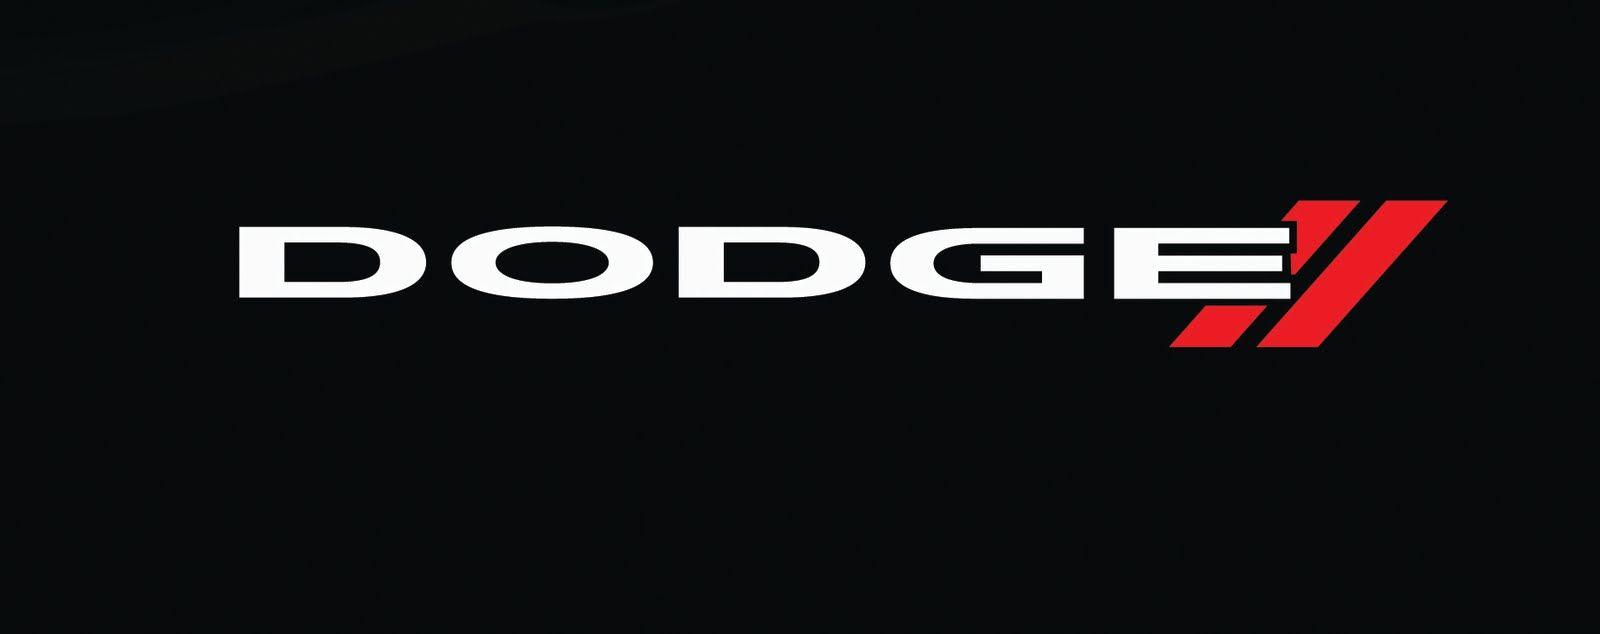 Dodge Car Company Logo - Dodge Logo, Dodge Car Symbol Meaning and History | Car Brand Names.com